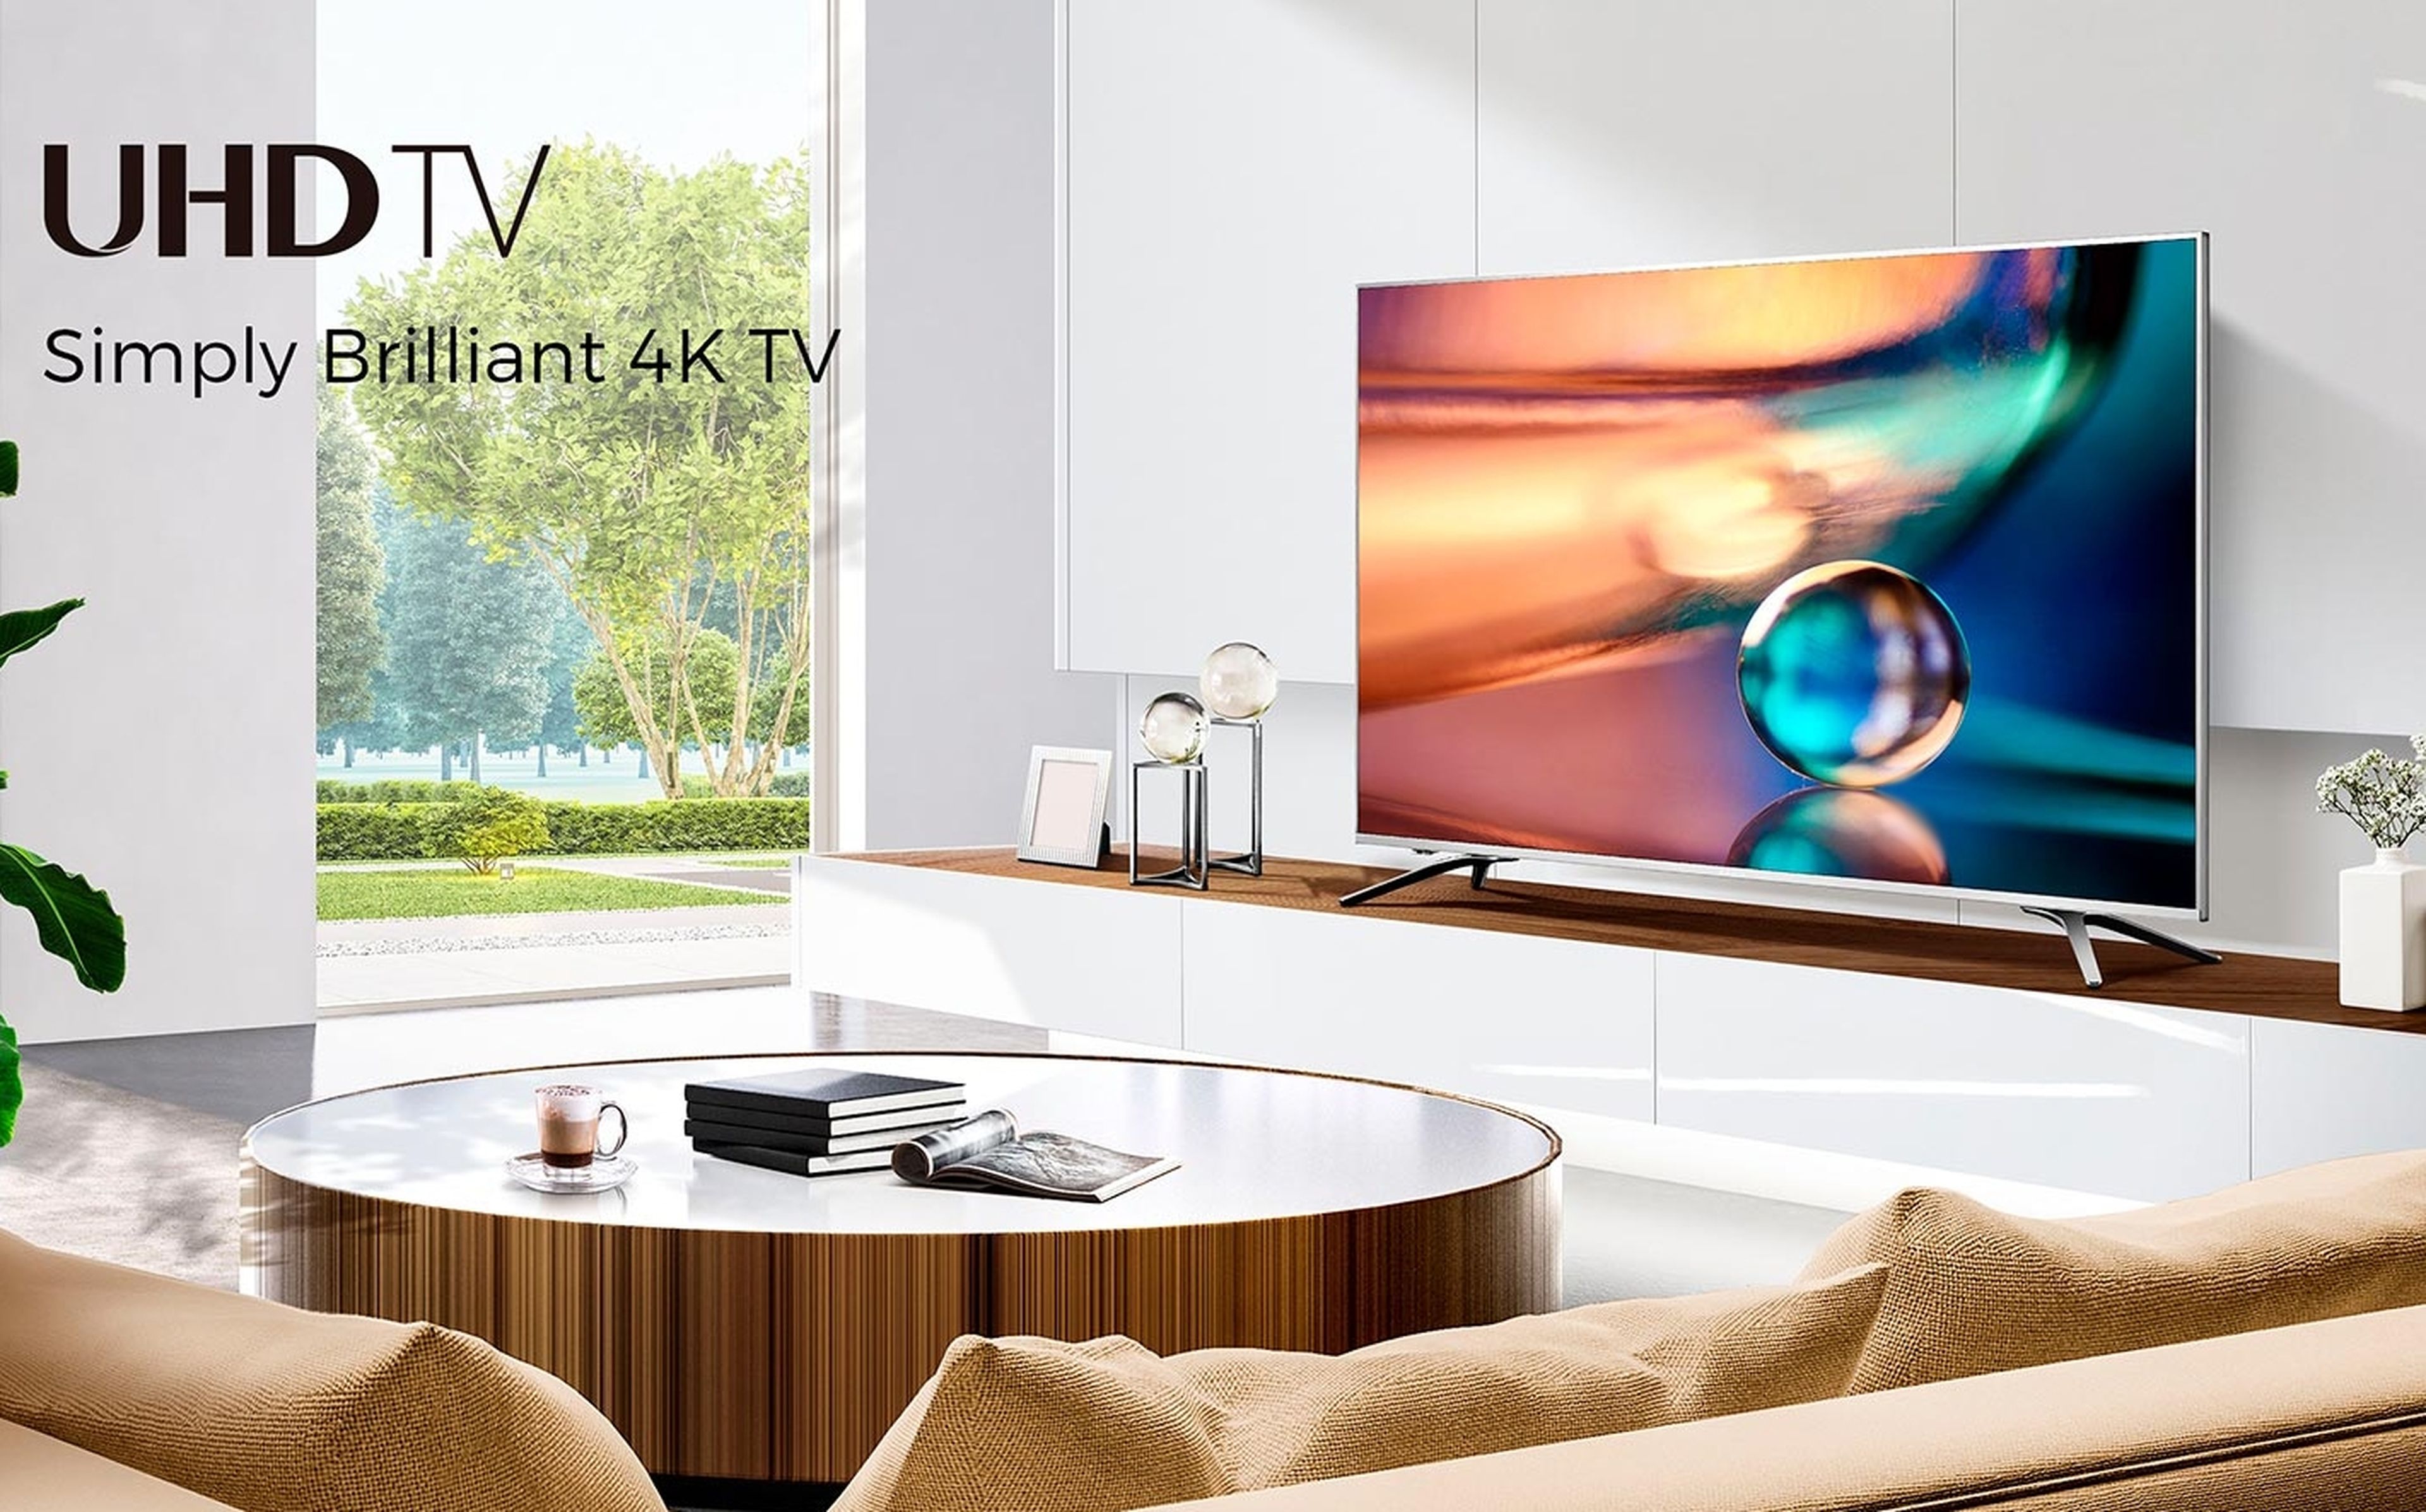 Este televisor 4K HDR de 50 pulgadas ha sido rebajado a 329€ en Amazon